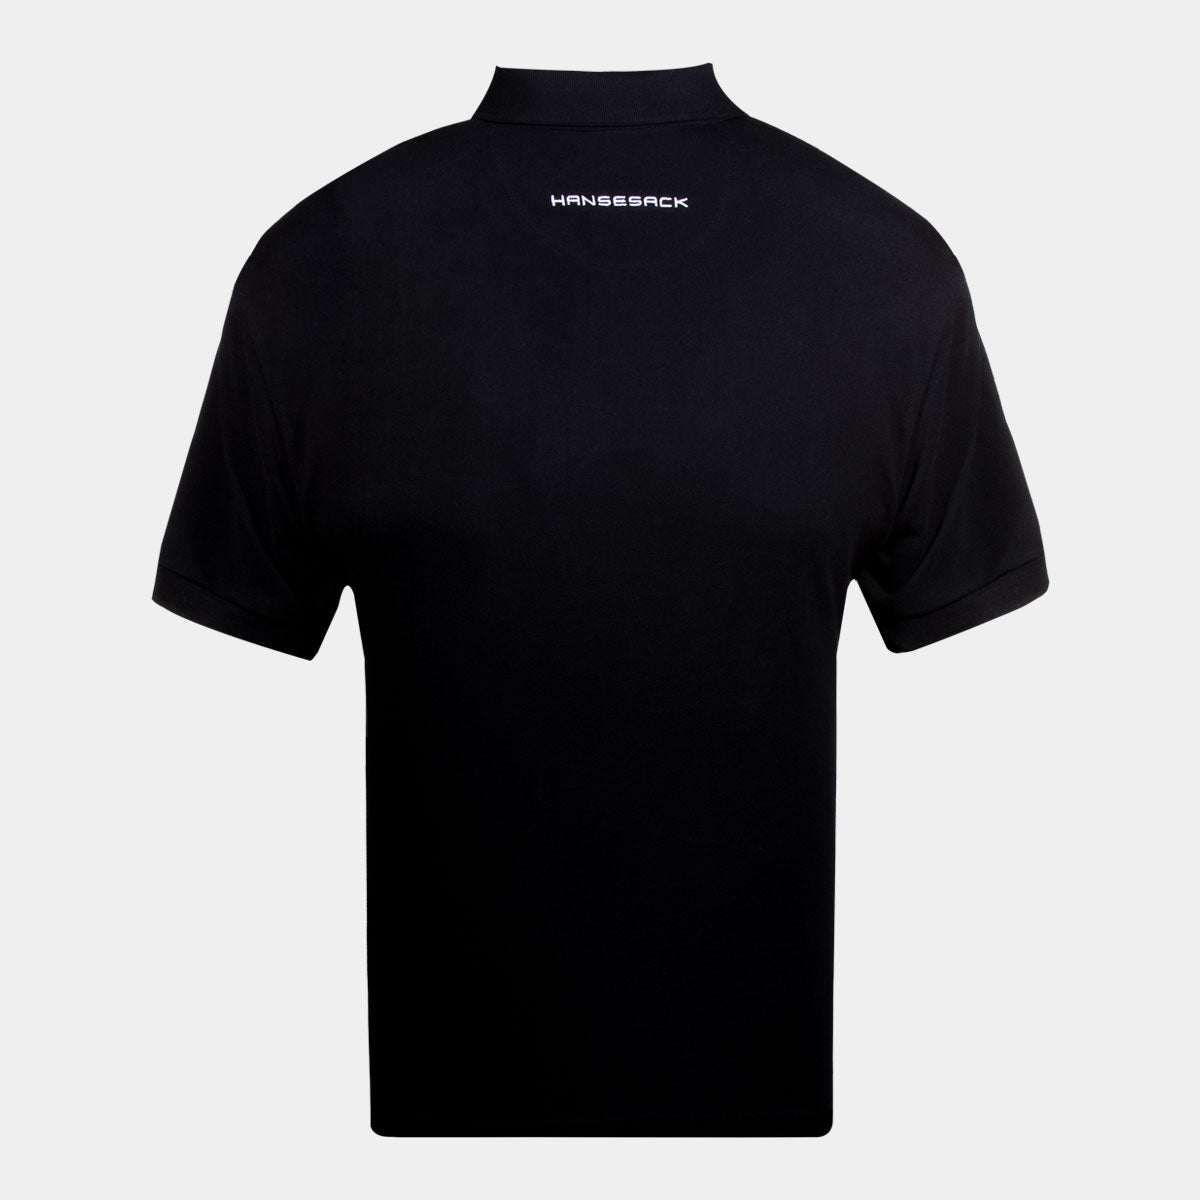 Hansesack Produktbild schwarzes Polo-Shirt mit weißem Hansesack Stick von hinten